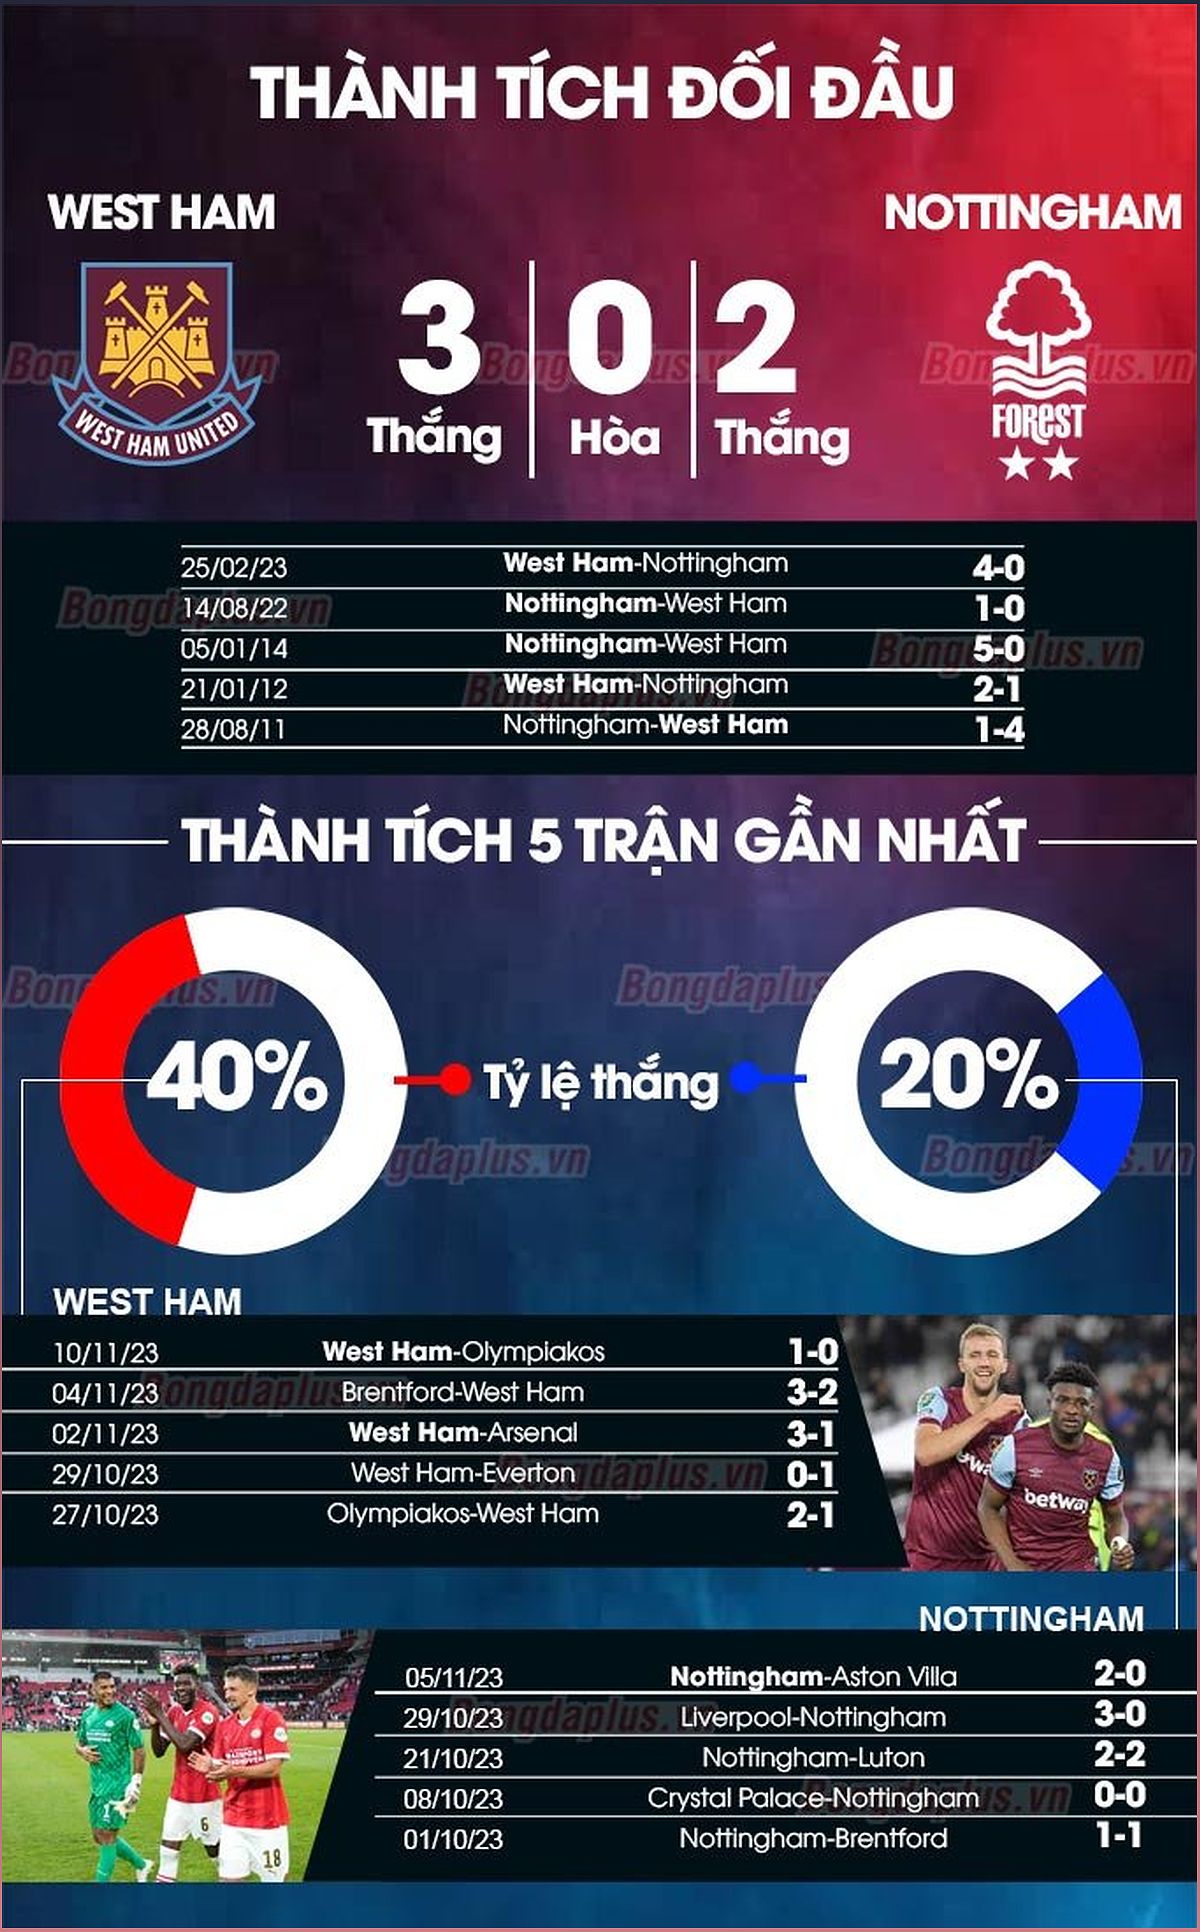 Nhận định trận đấu West Ham vs Nottingham: Phân tích phong độ, lực lượng và dự đoán tỉ số - -1886703386